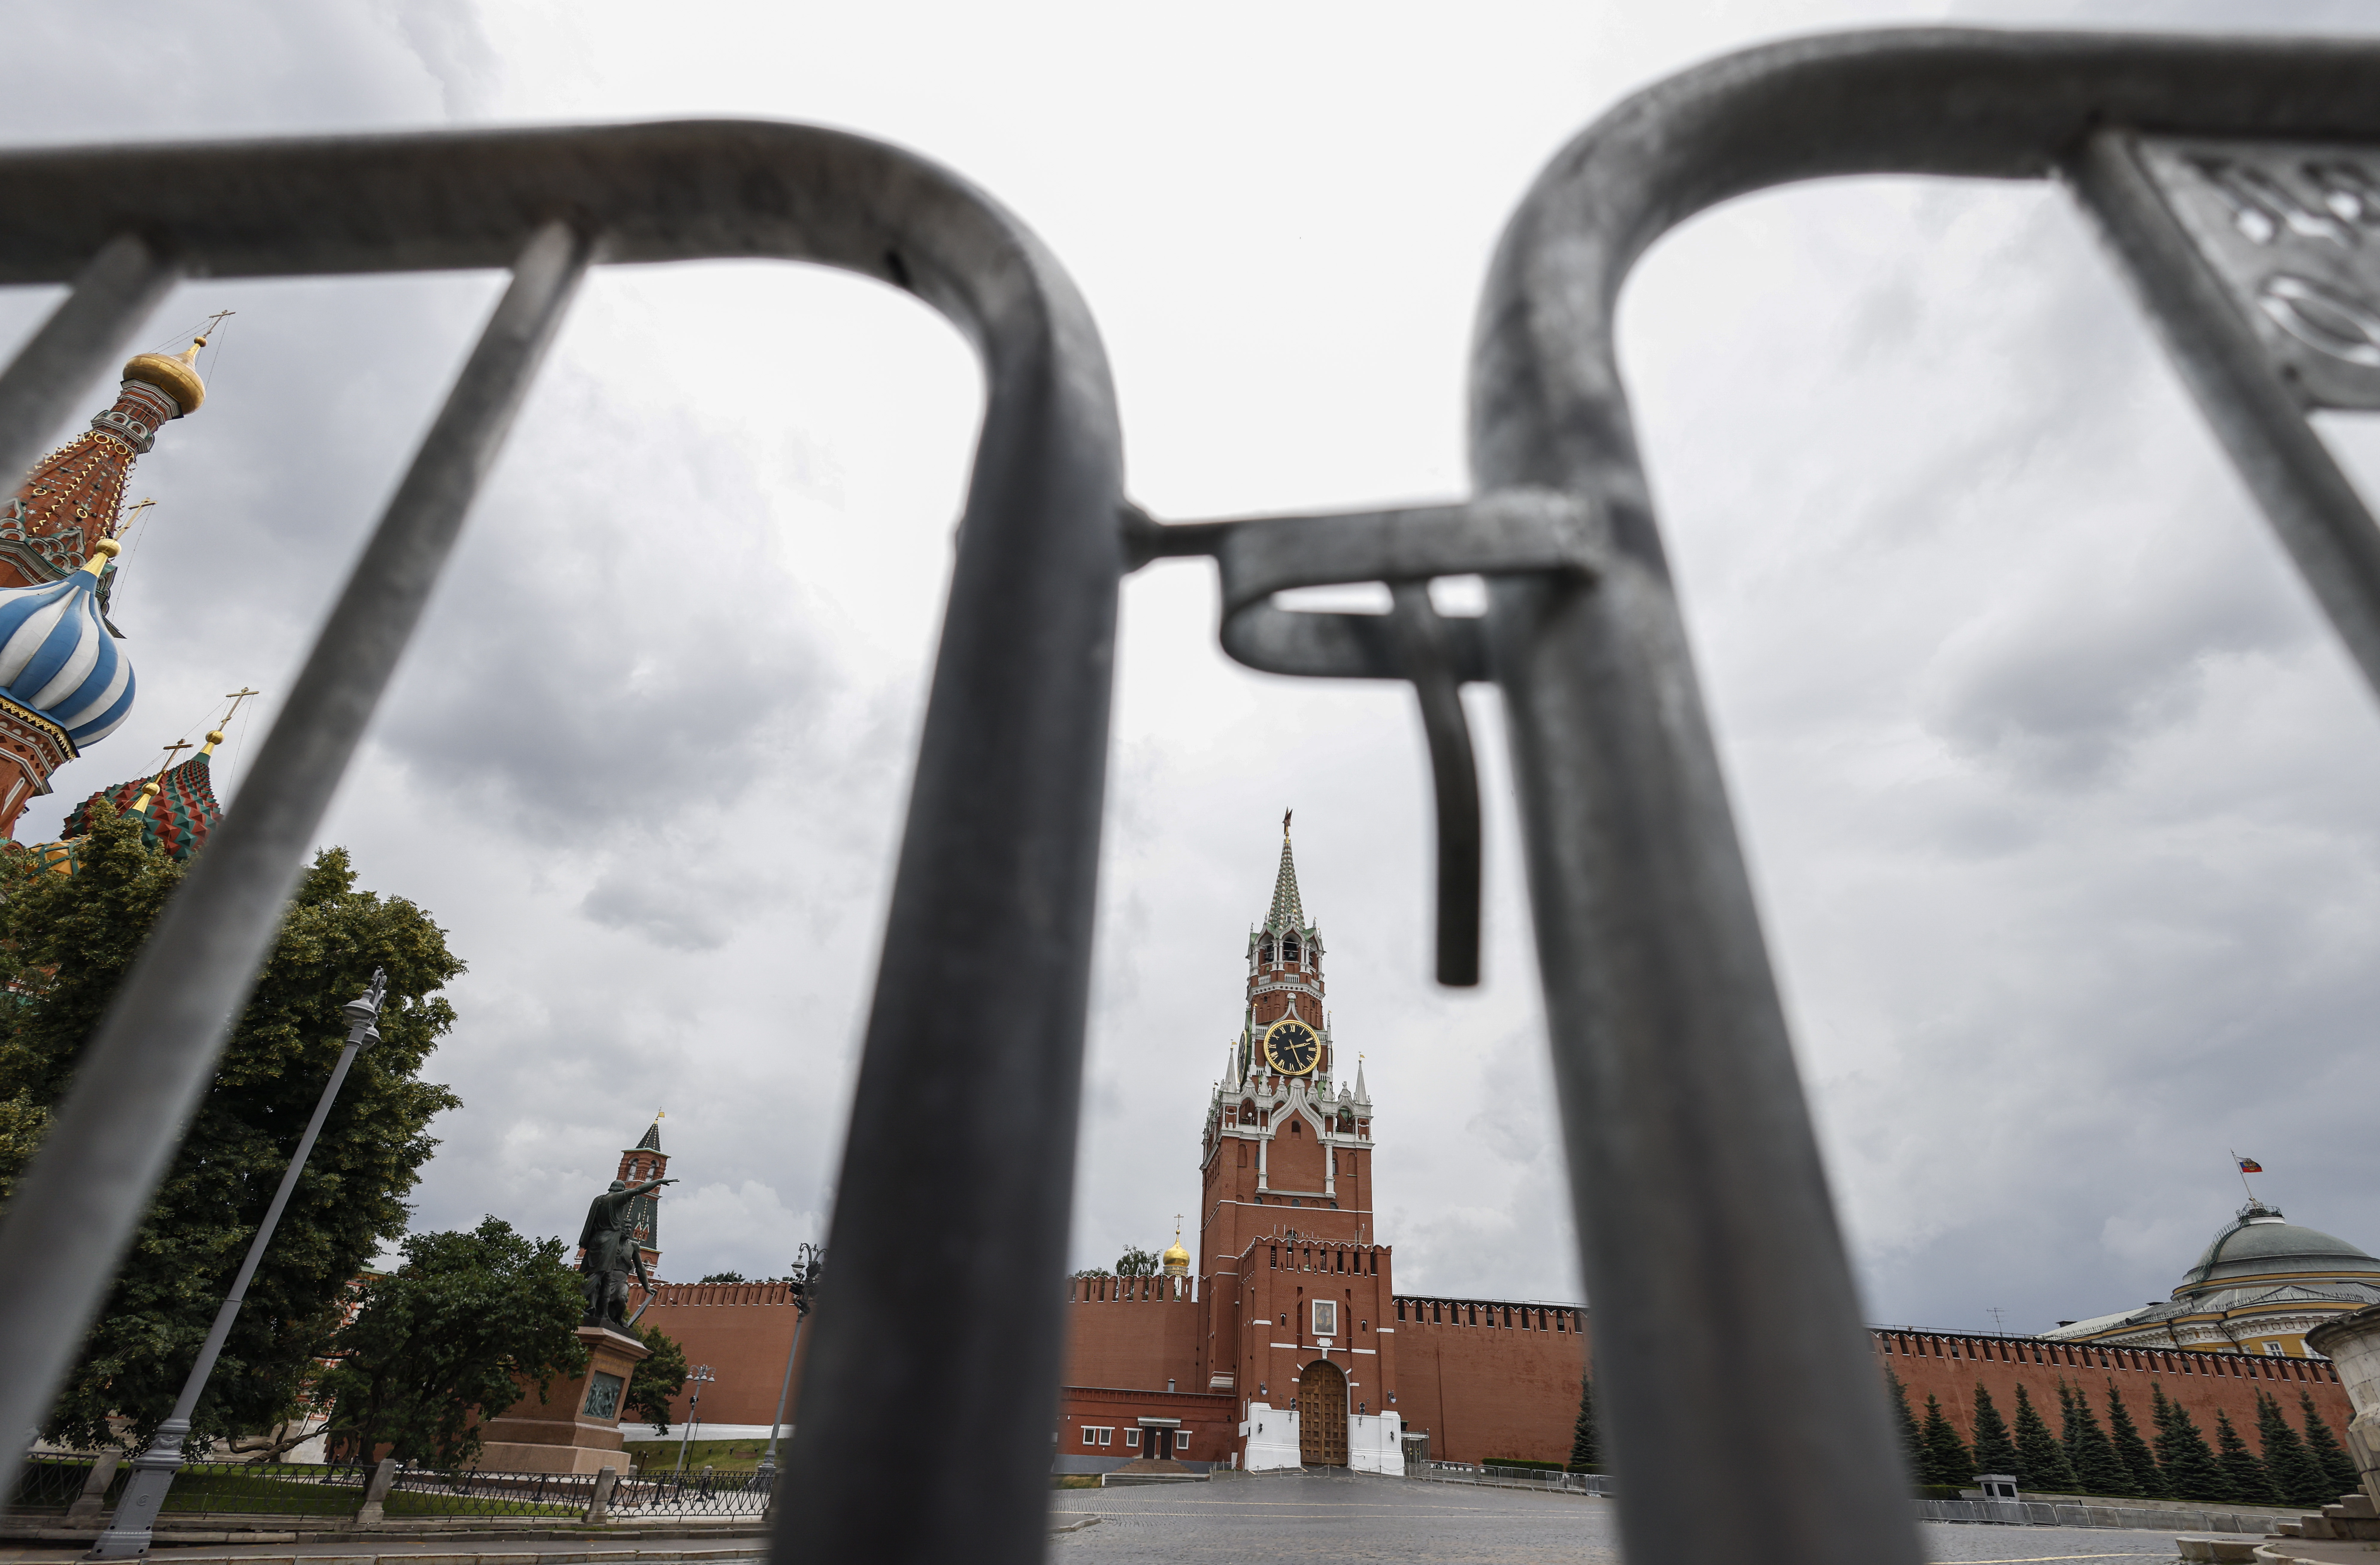 Obwohl es von außen ruhig aussieht, wird gemunkelt, dass im Kreml eine Säuberung im Gange ist